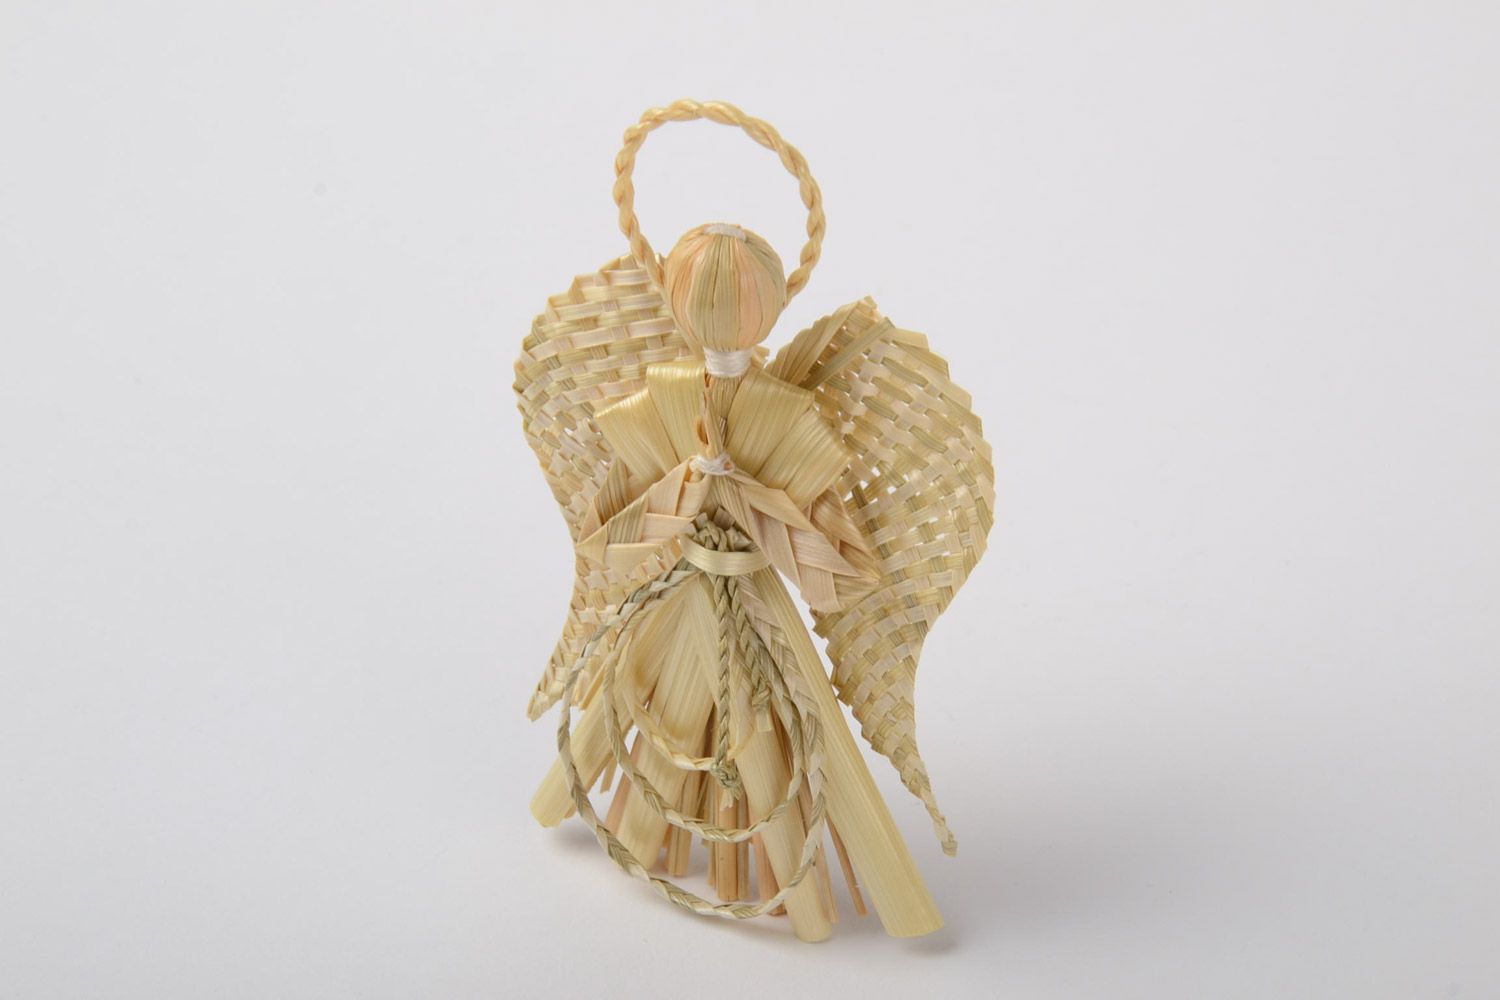 Ангел хранитель фигурка плетеная из соломы небольшого размера ручная работа фото 2